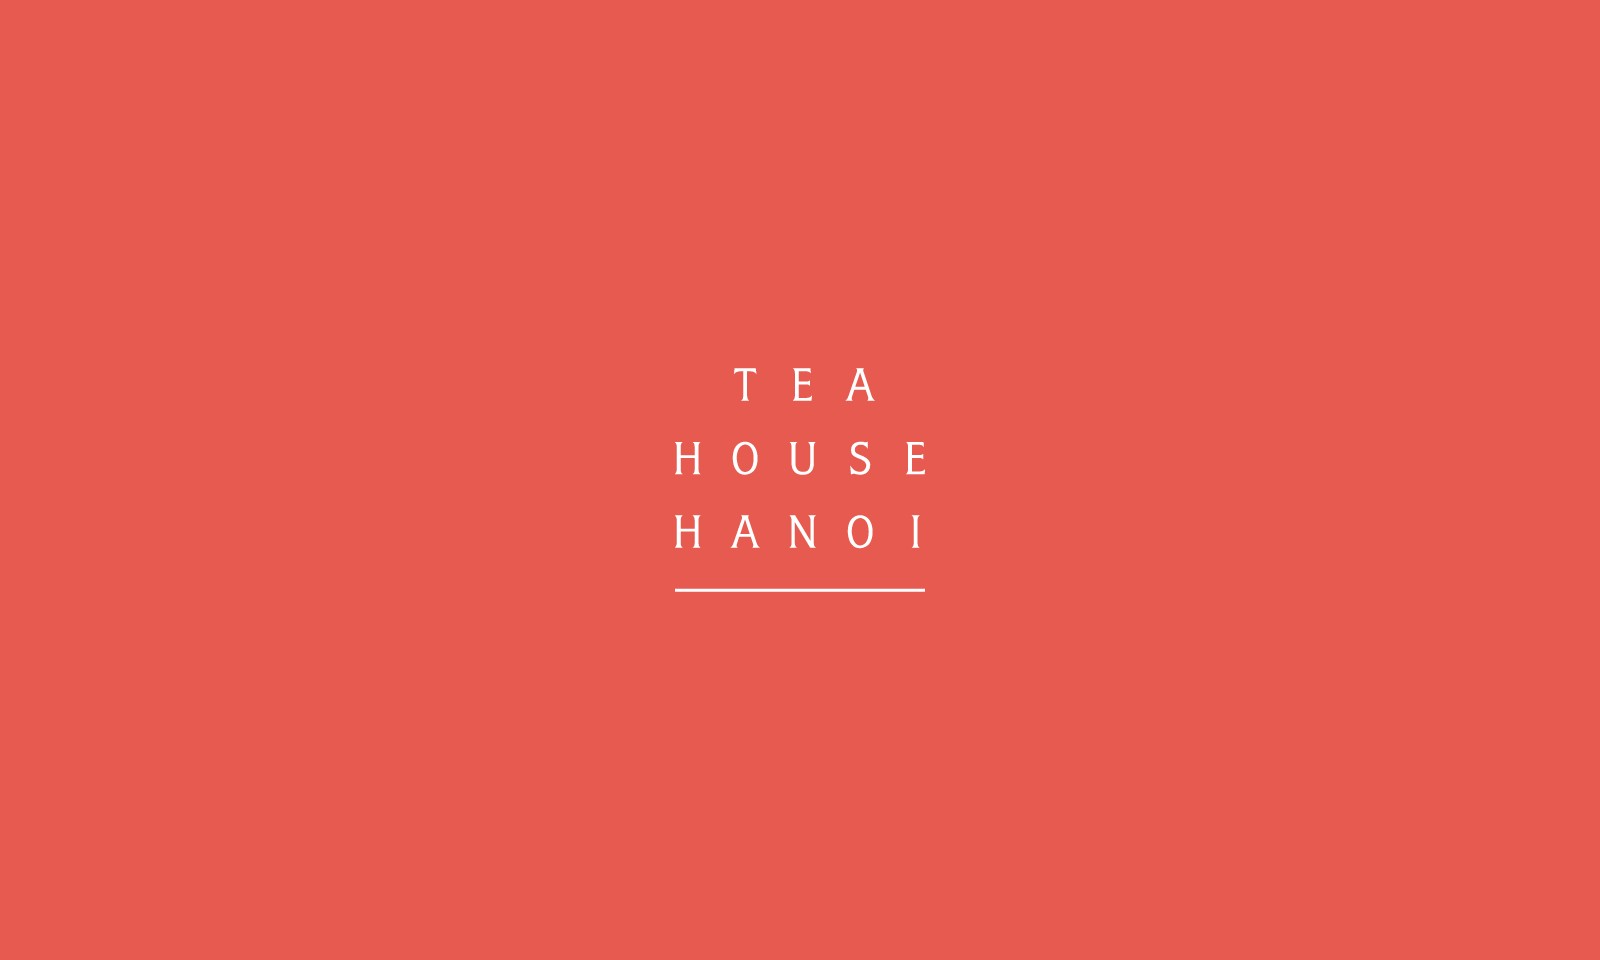 越南TEA HOUSE HANOI茶品牌和包装设计